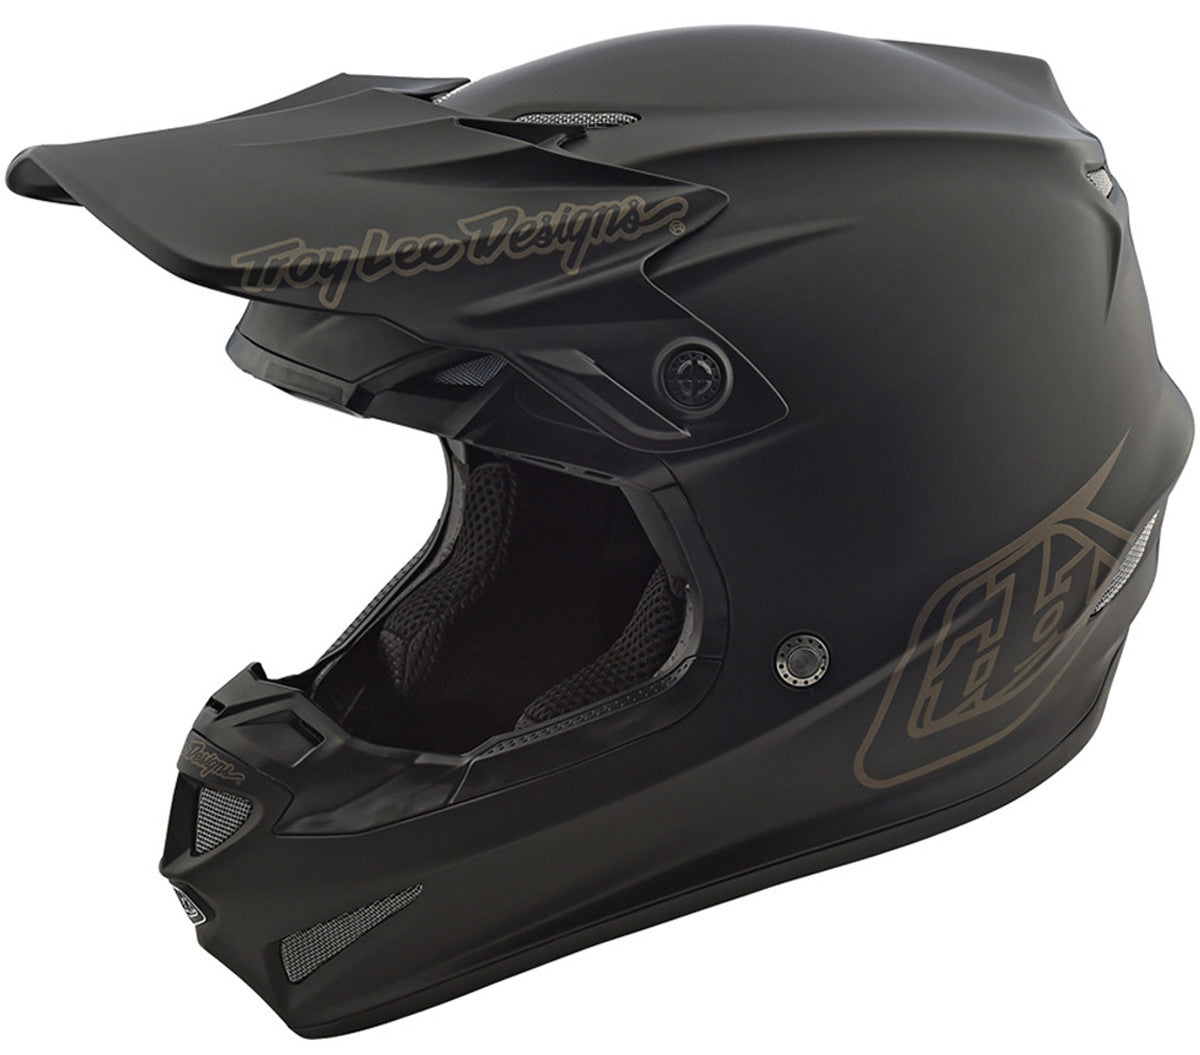 Tested: 2021 Troy Lee Designs SE4 Composite helmet 